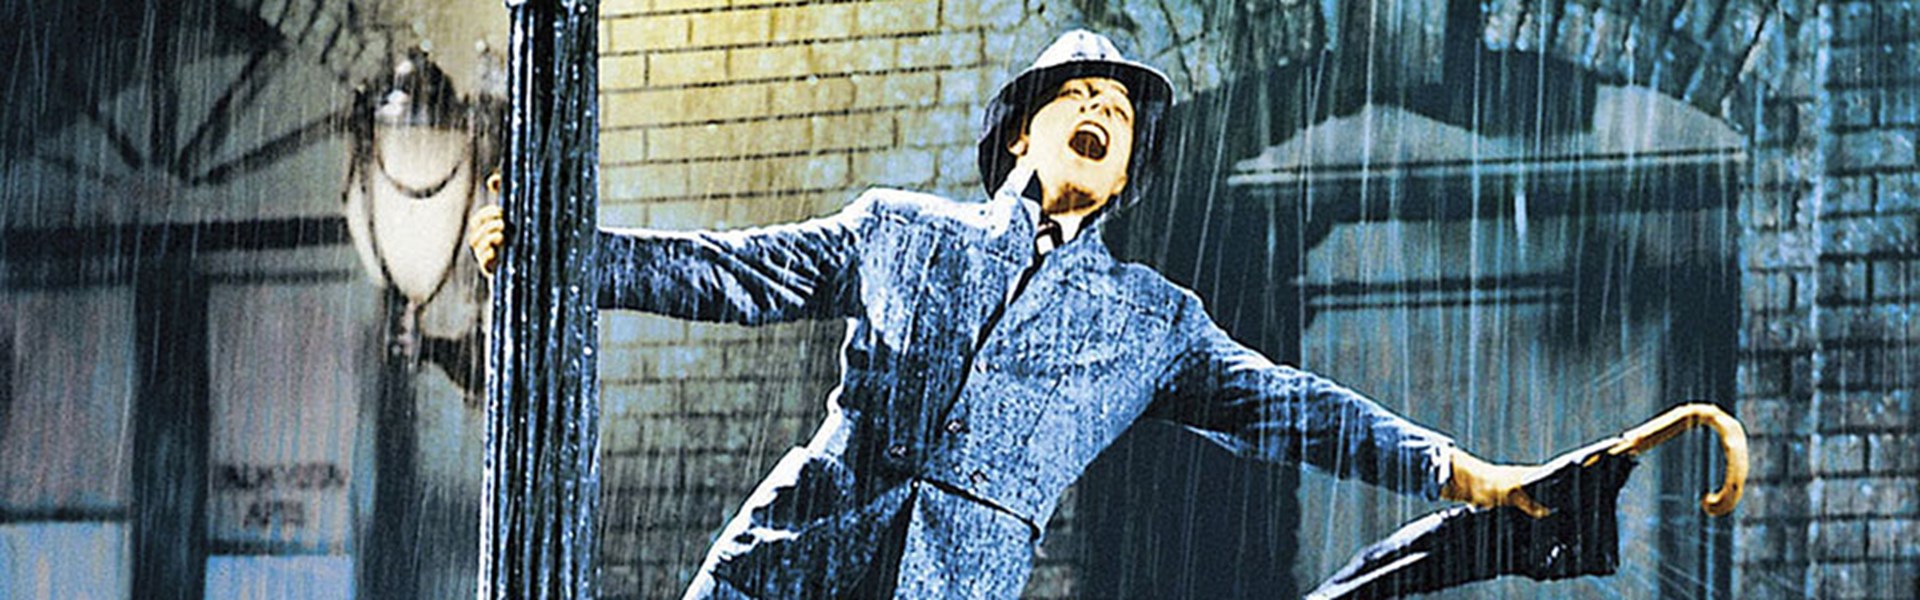 FILM: Singin' in the Rain (U) - Midweek Movies